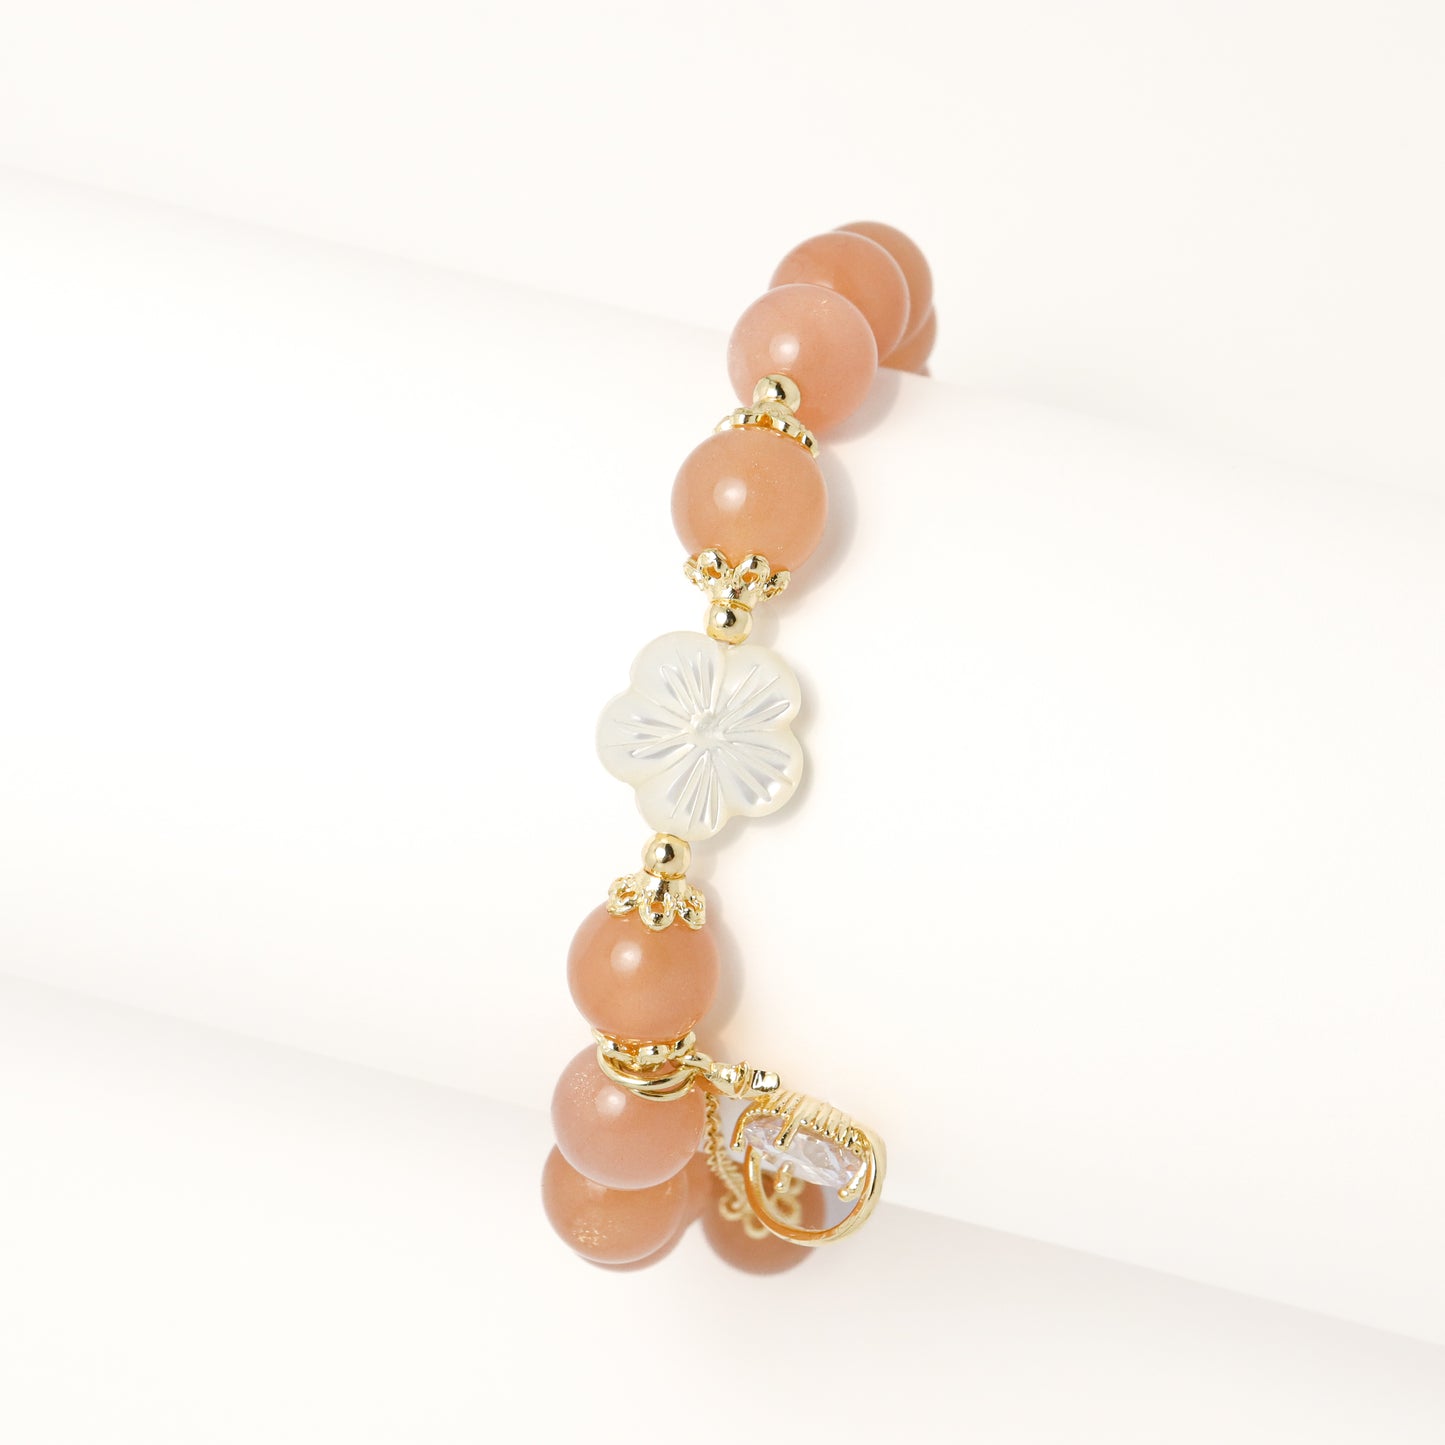 Morning Star - Orange Moonstone & Flower Shell Bracelet